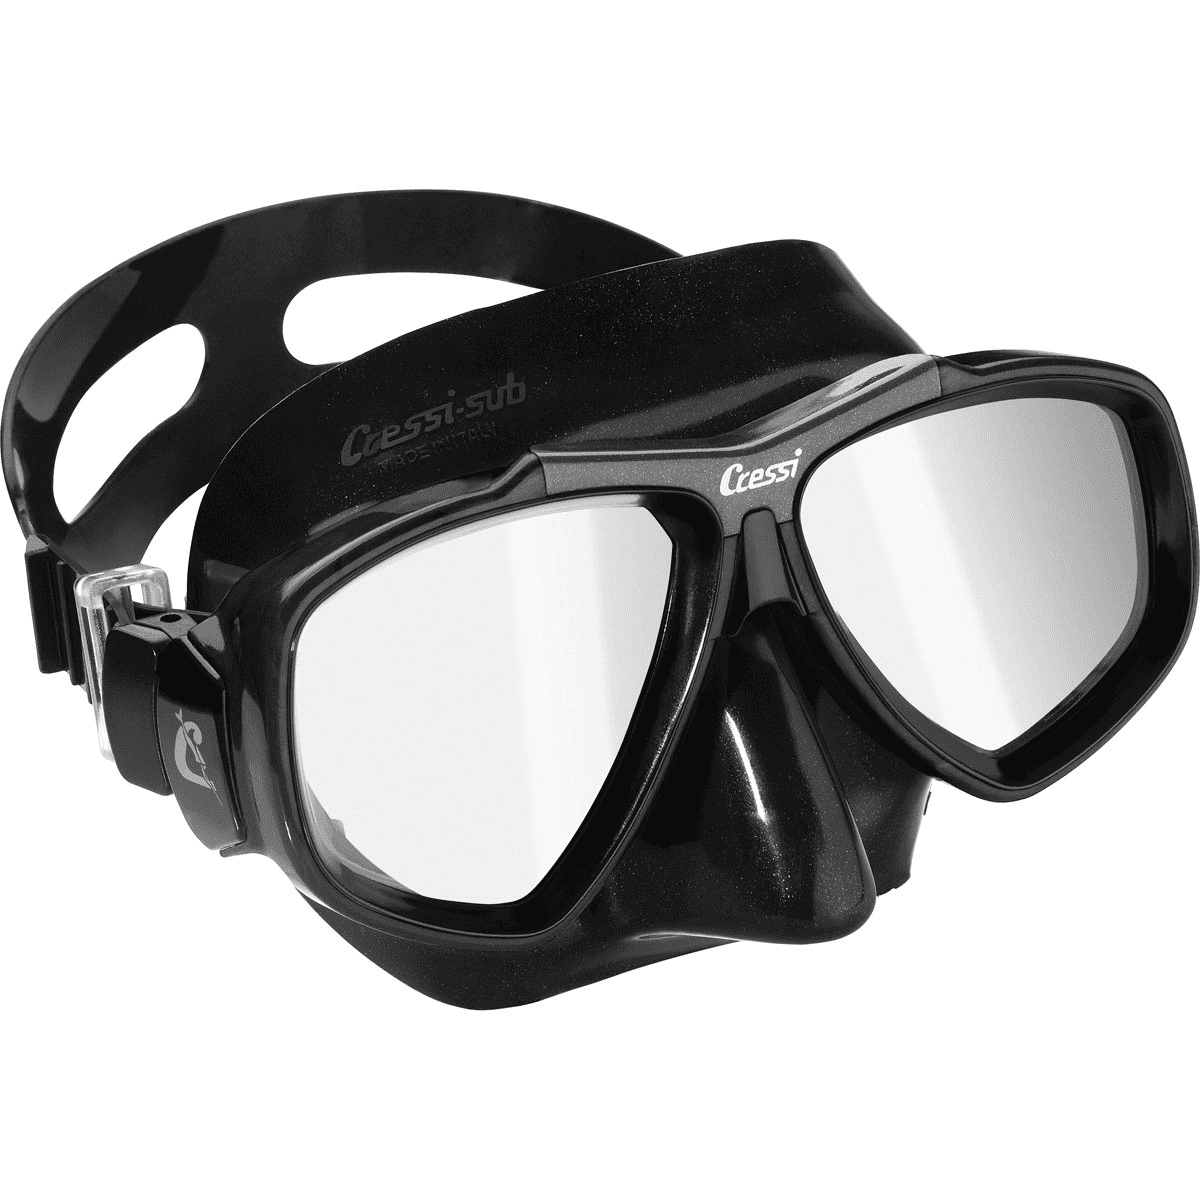 Cressi Focus Dive Mask - Walmart.com